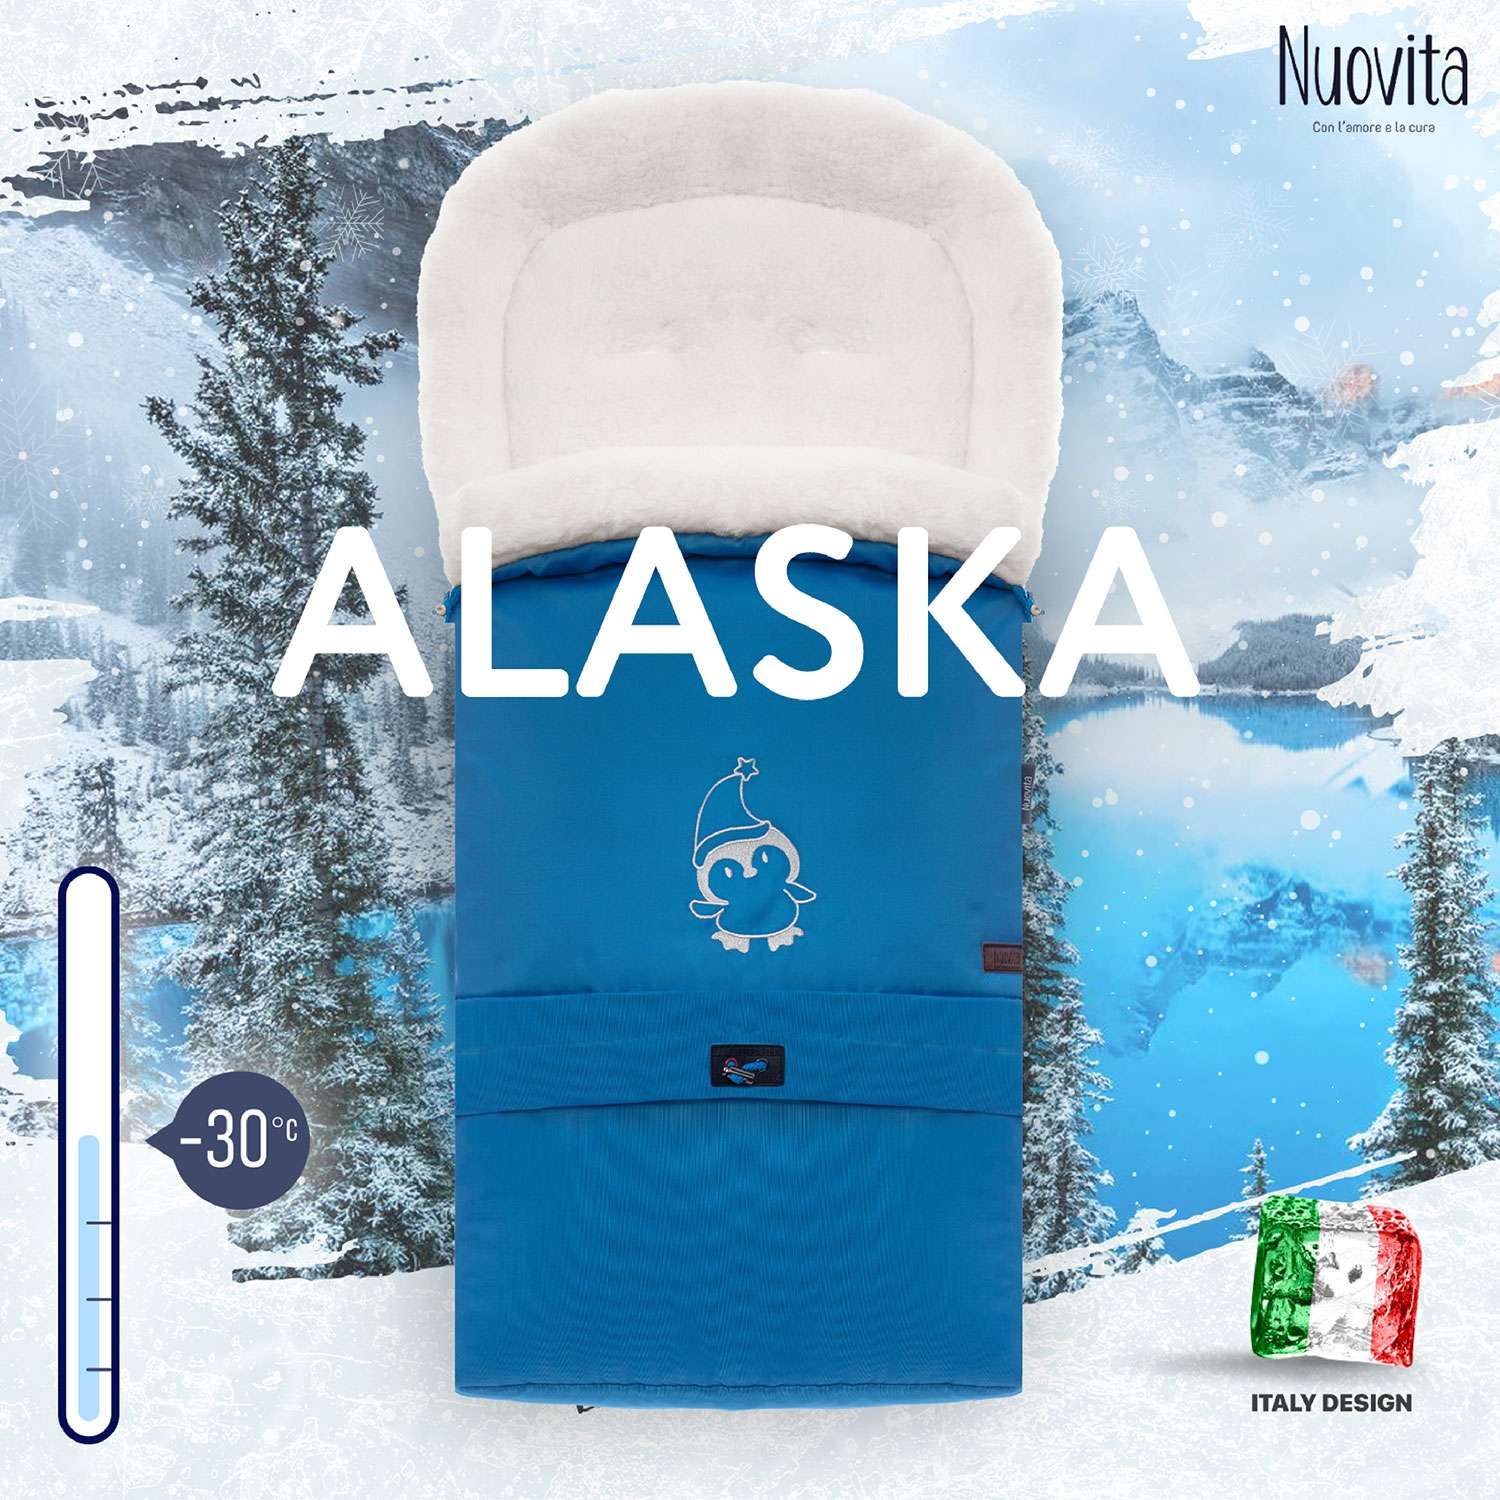 Конверт в коляску Nuovita Alaska Bianco Бордовый - фото 8